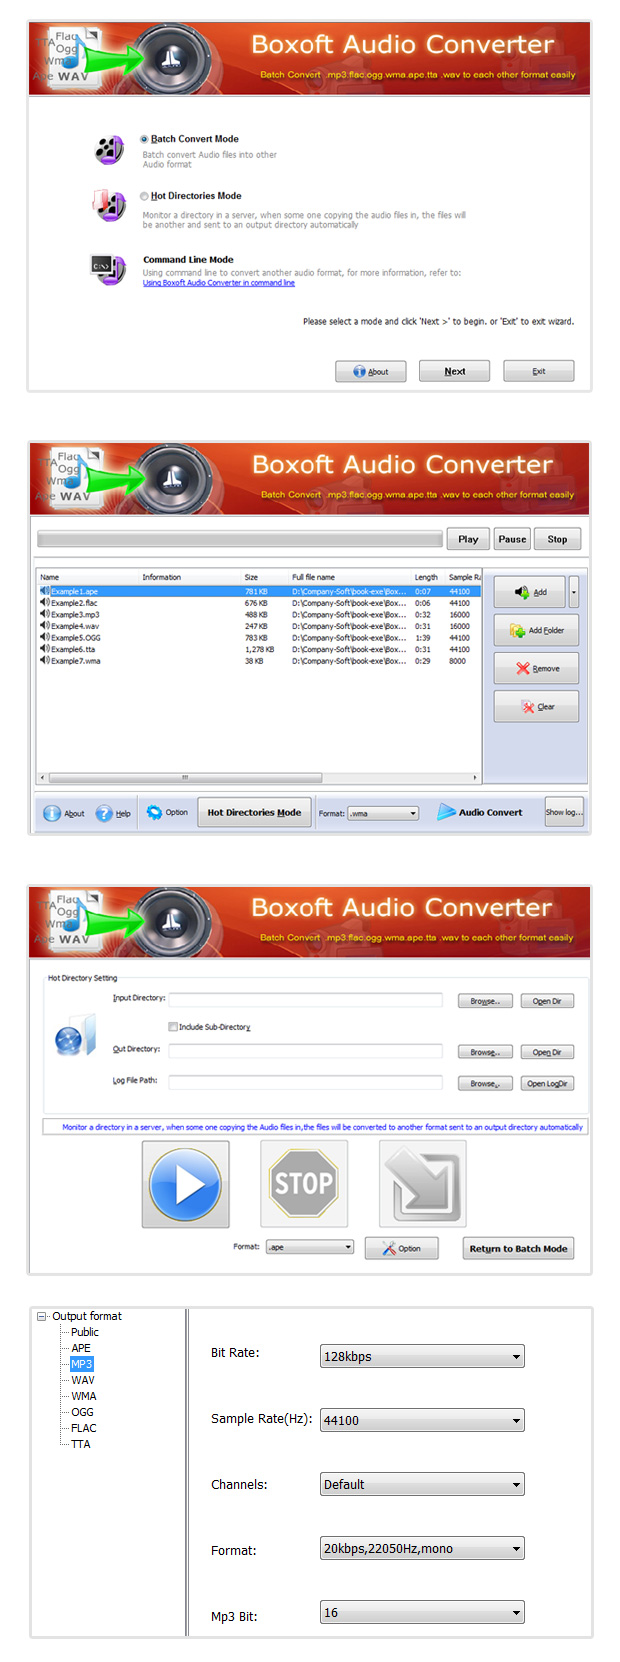 Boxoft audio converter Screenshots